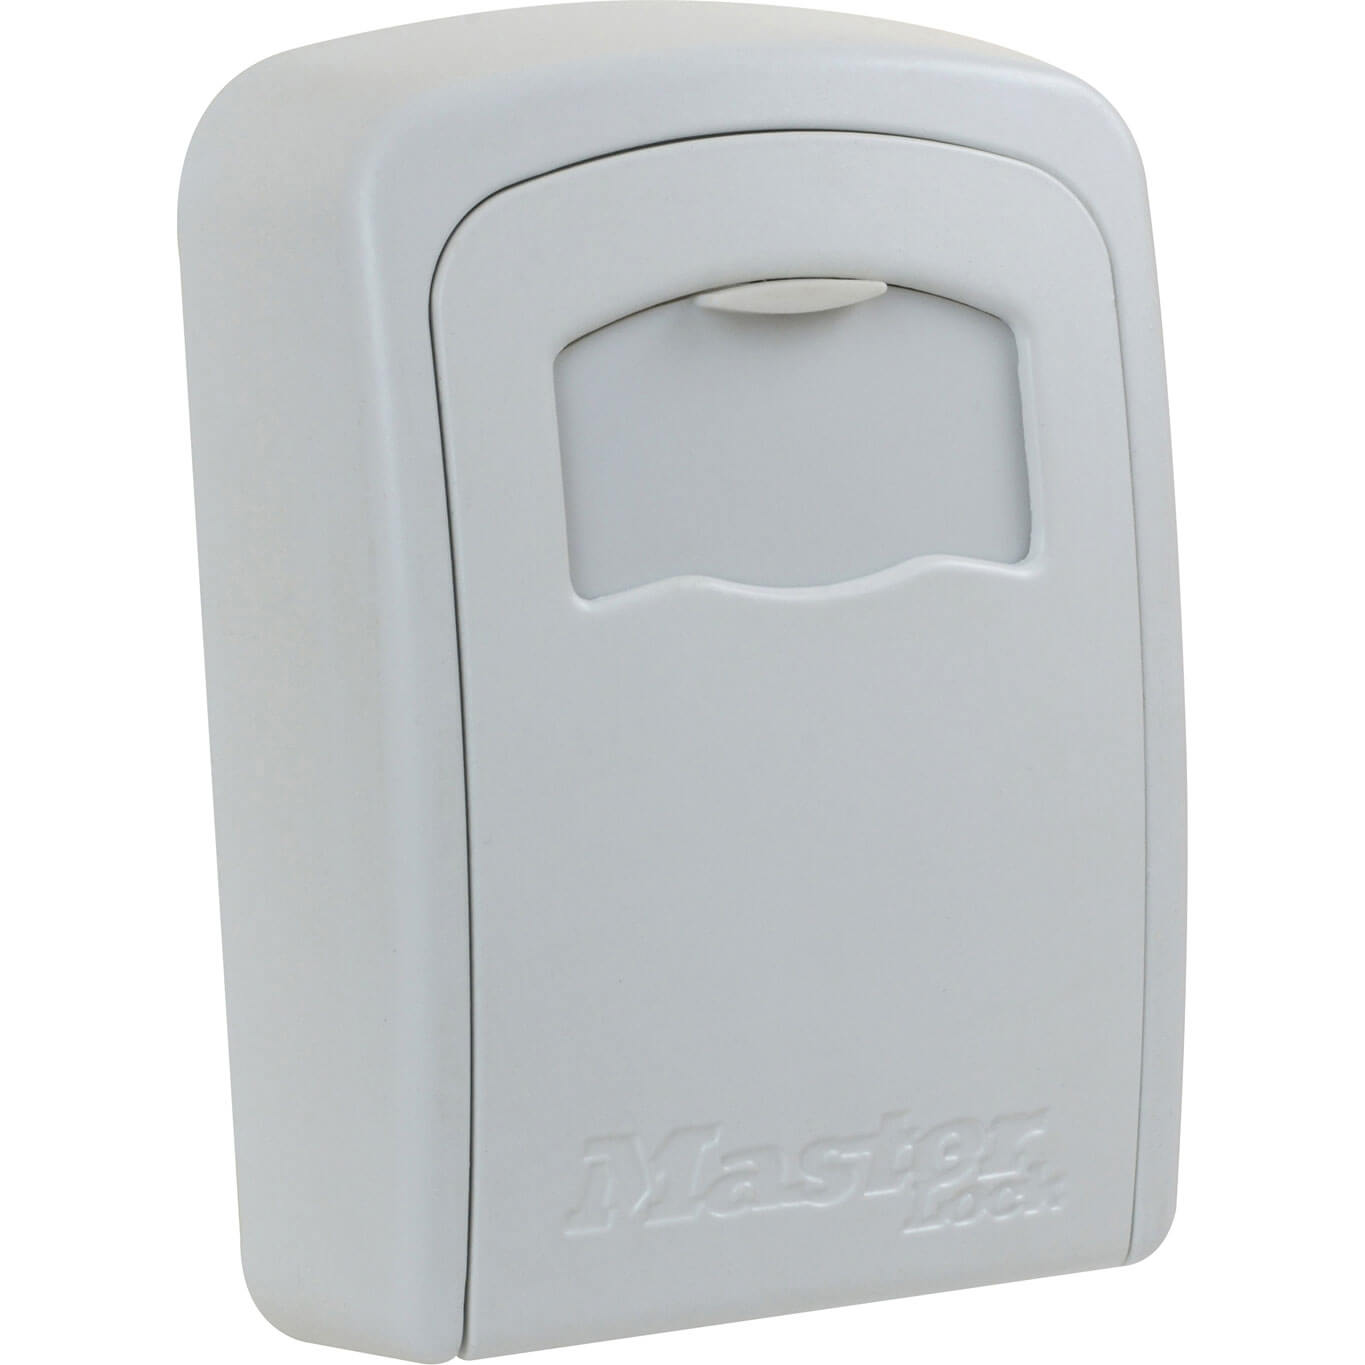 Image of Masterlock Wall Mounted Key Safe Cream